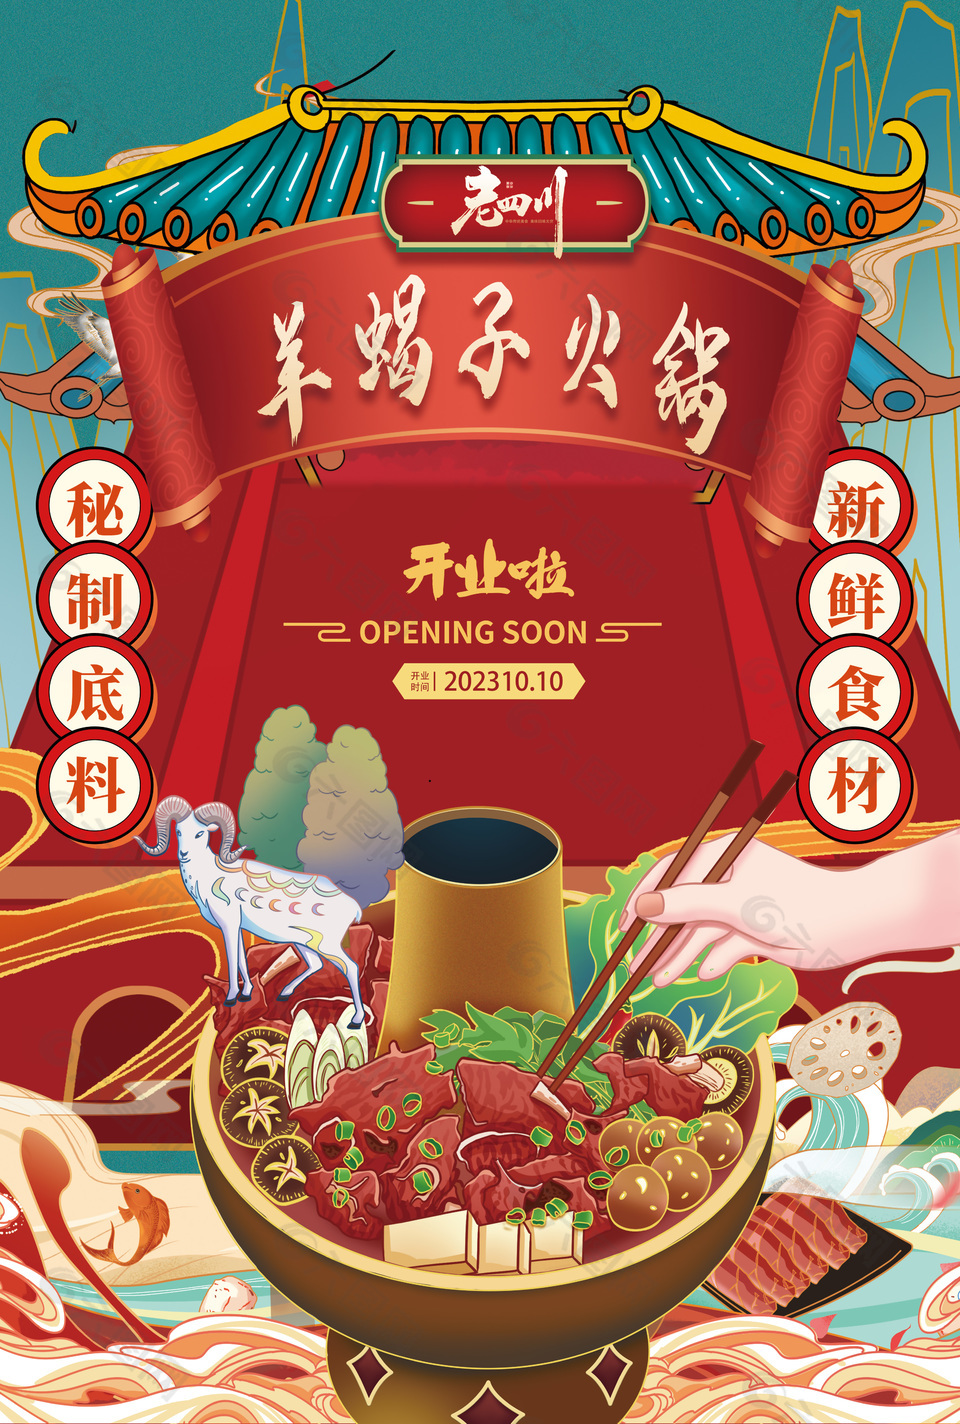 羊蝎子火锅四川传统美食海报设计